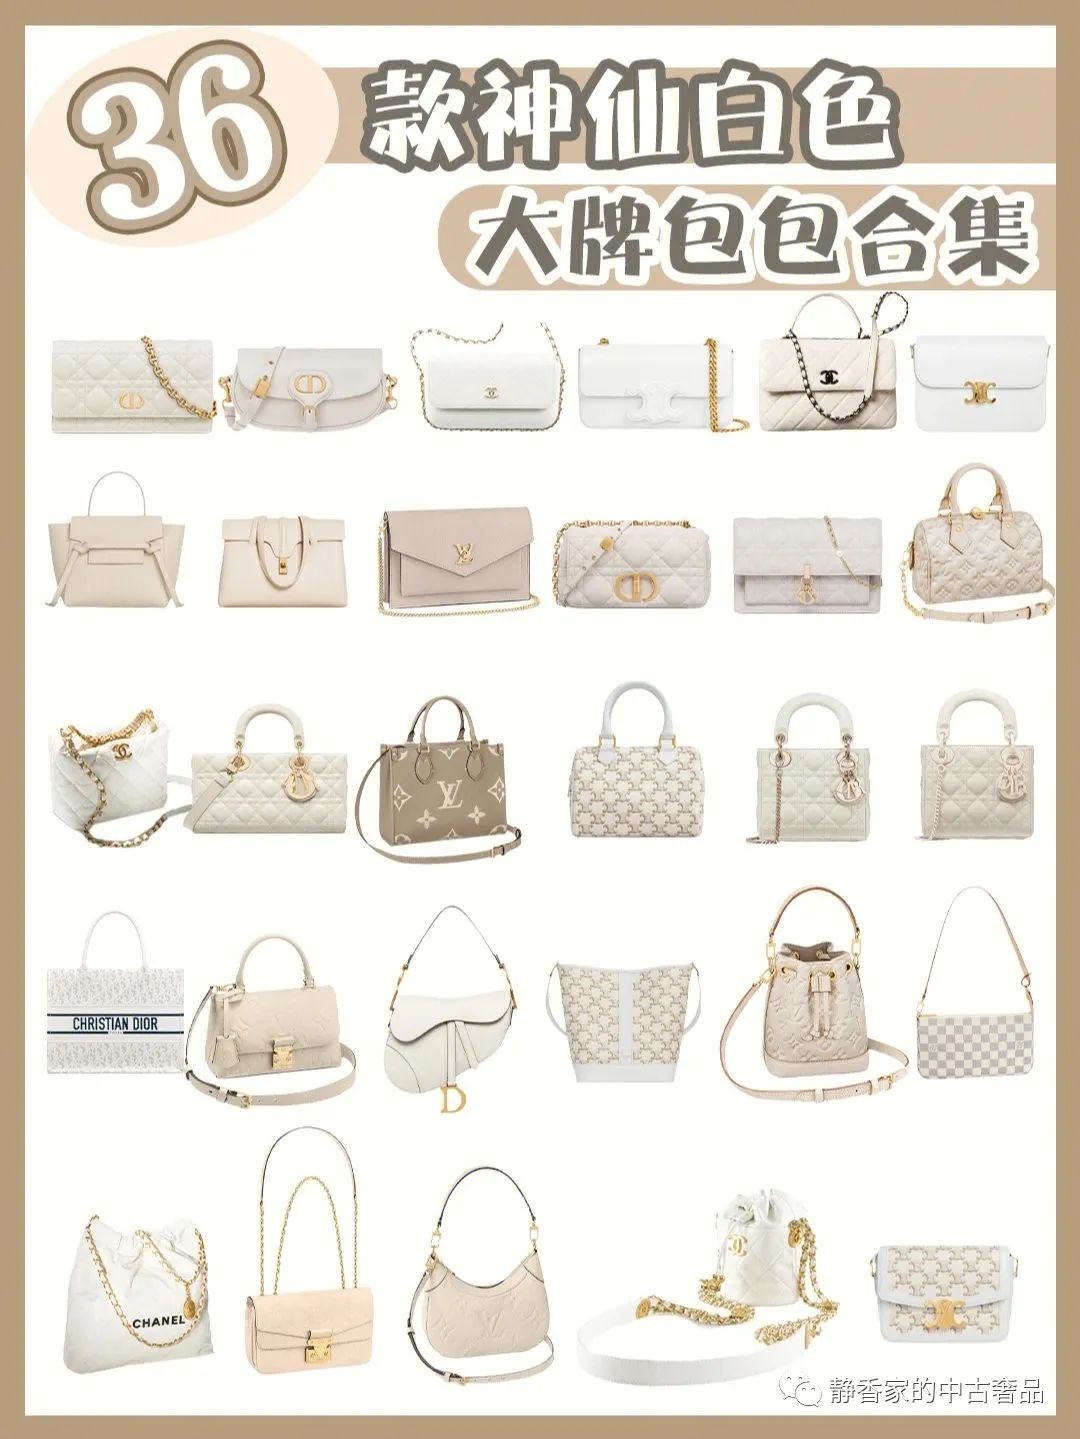 Top 36 collezione alla moda di borse di design di colore bianco (ultima versione 2022) - Recensione di borse di design falso di migliore qualità, Borsa di design replica ru